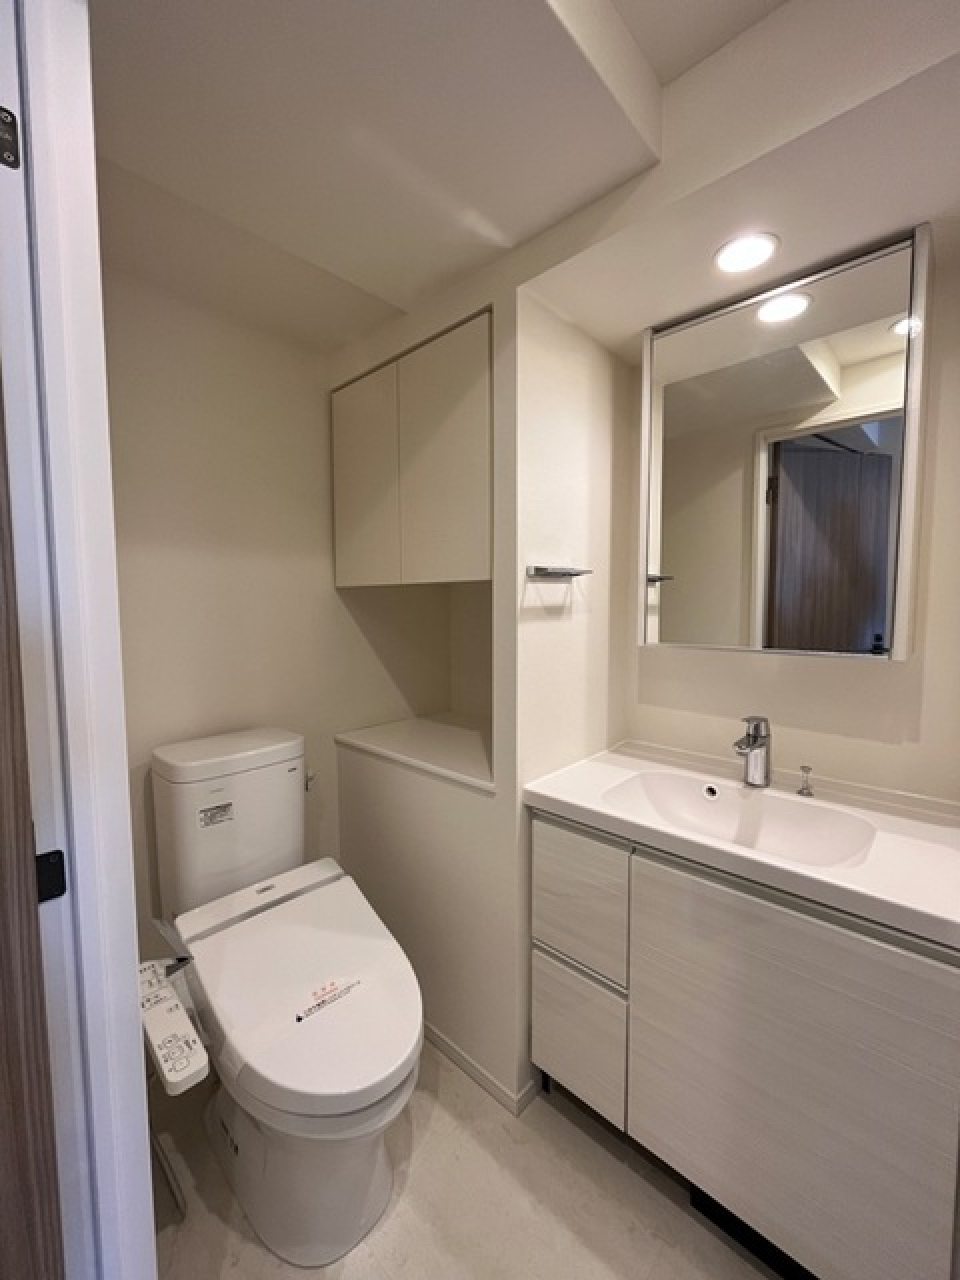 トイレと洗面台が一緒になっている設計で、トイレはウォシュレット付きです。
※写真は同タイプ住戸です。